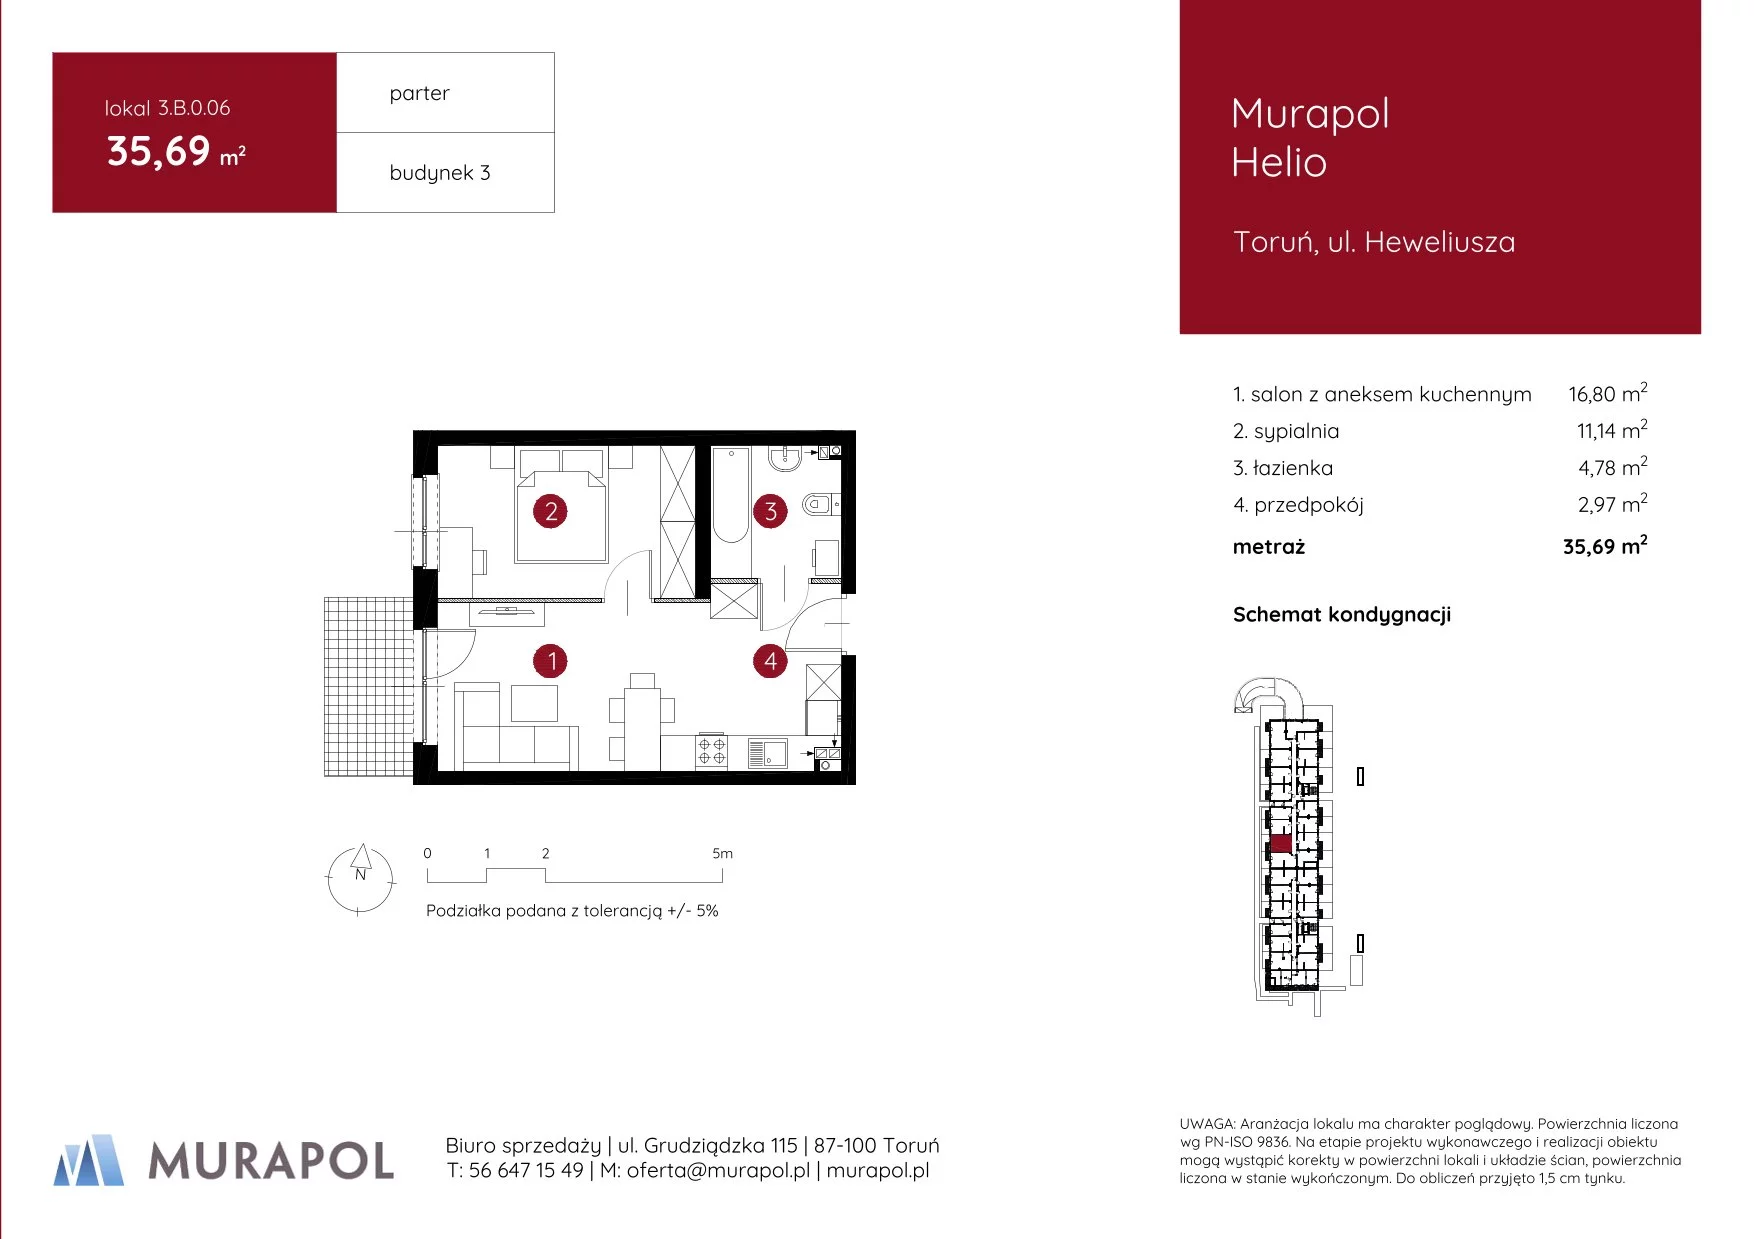 Mieszkanie 35,69 m², parter, oferta nr 3.B.0.06, Murapol Helio, Toruń, Wrzosy, JAR, ul. Heweliusza